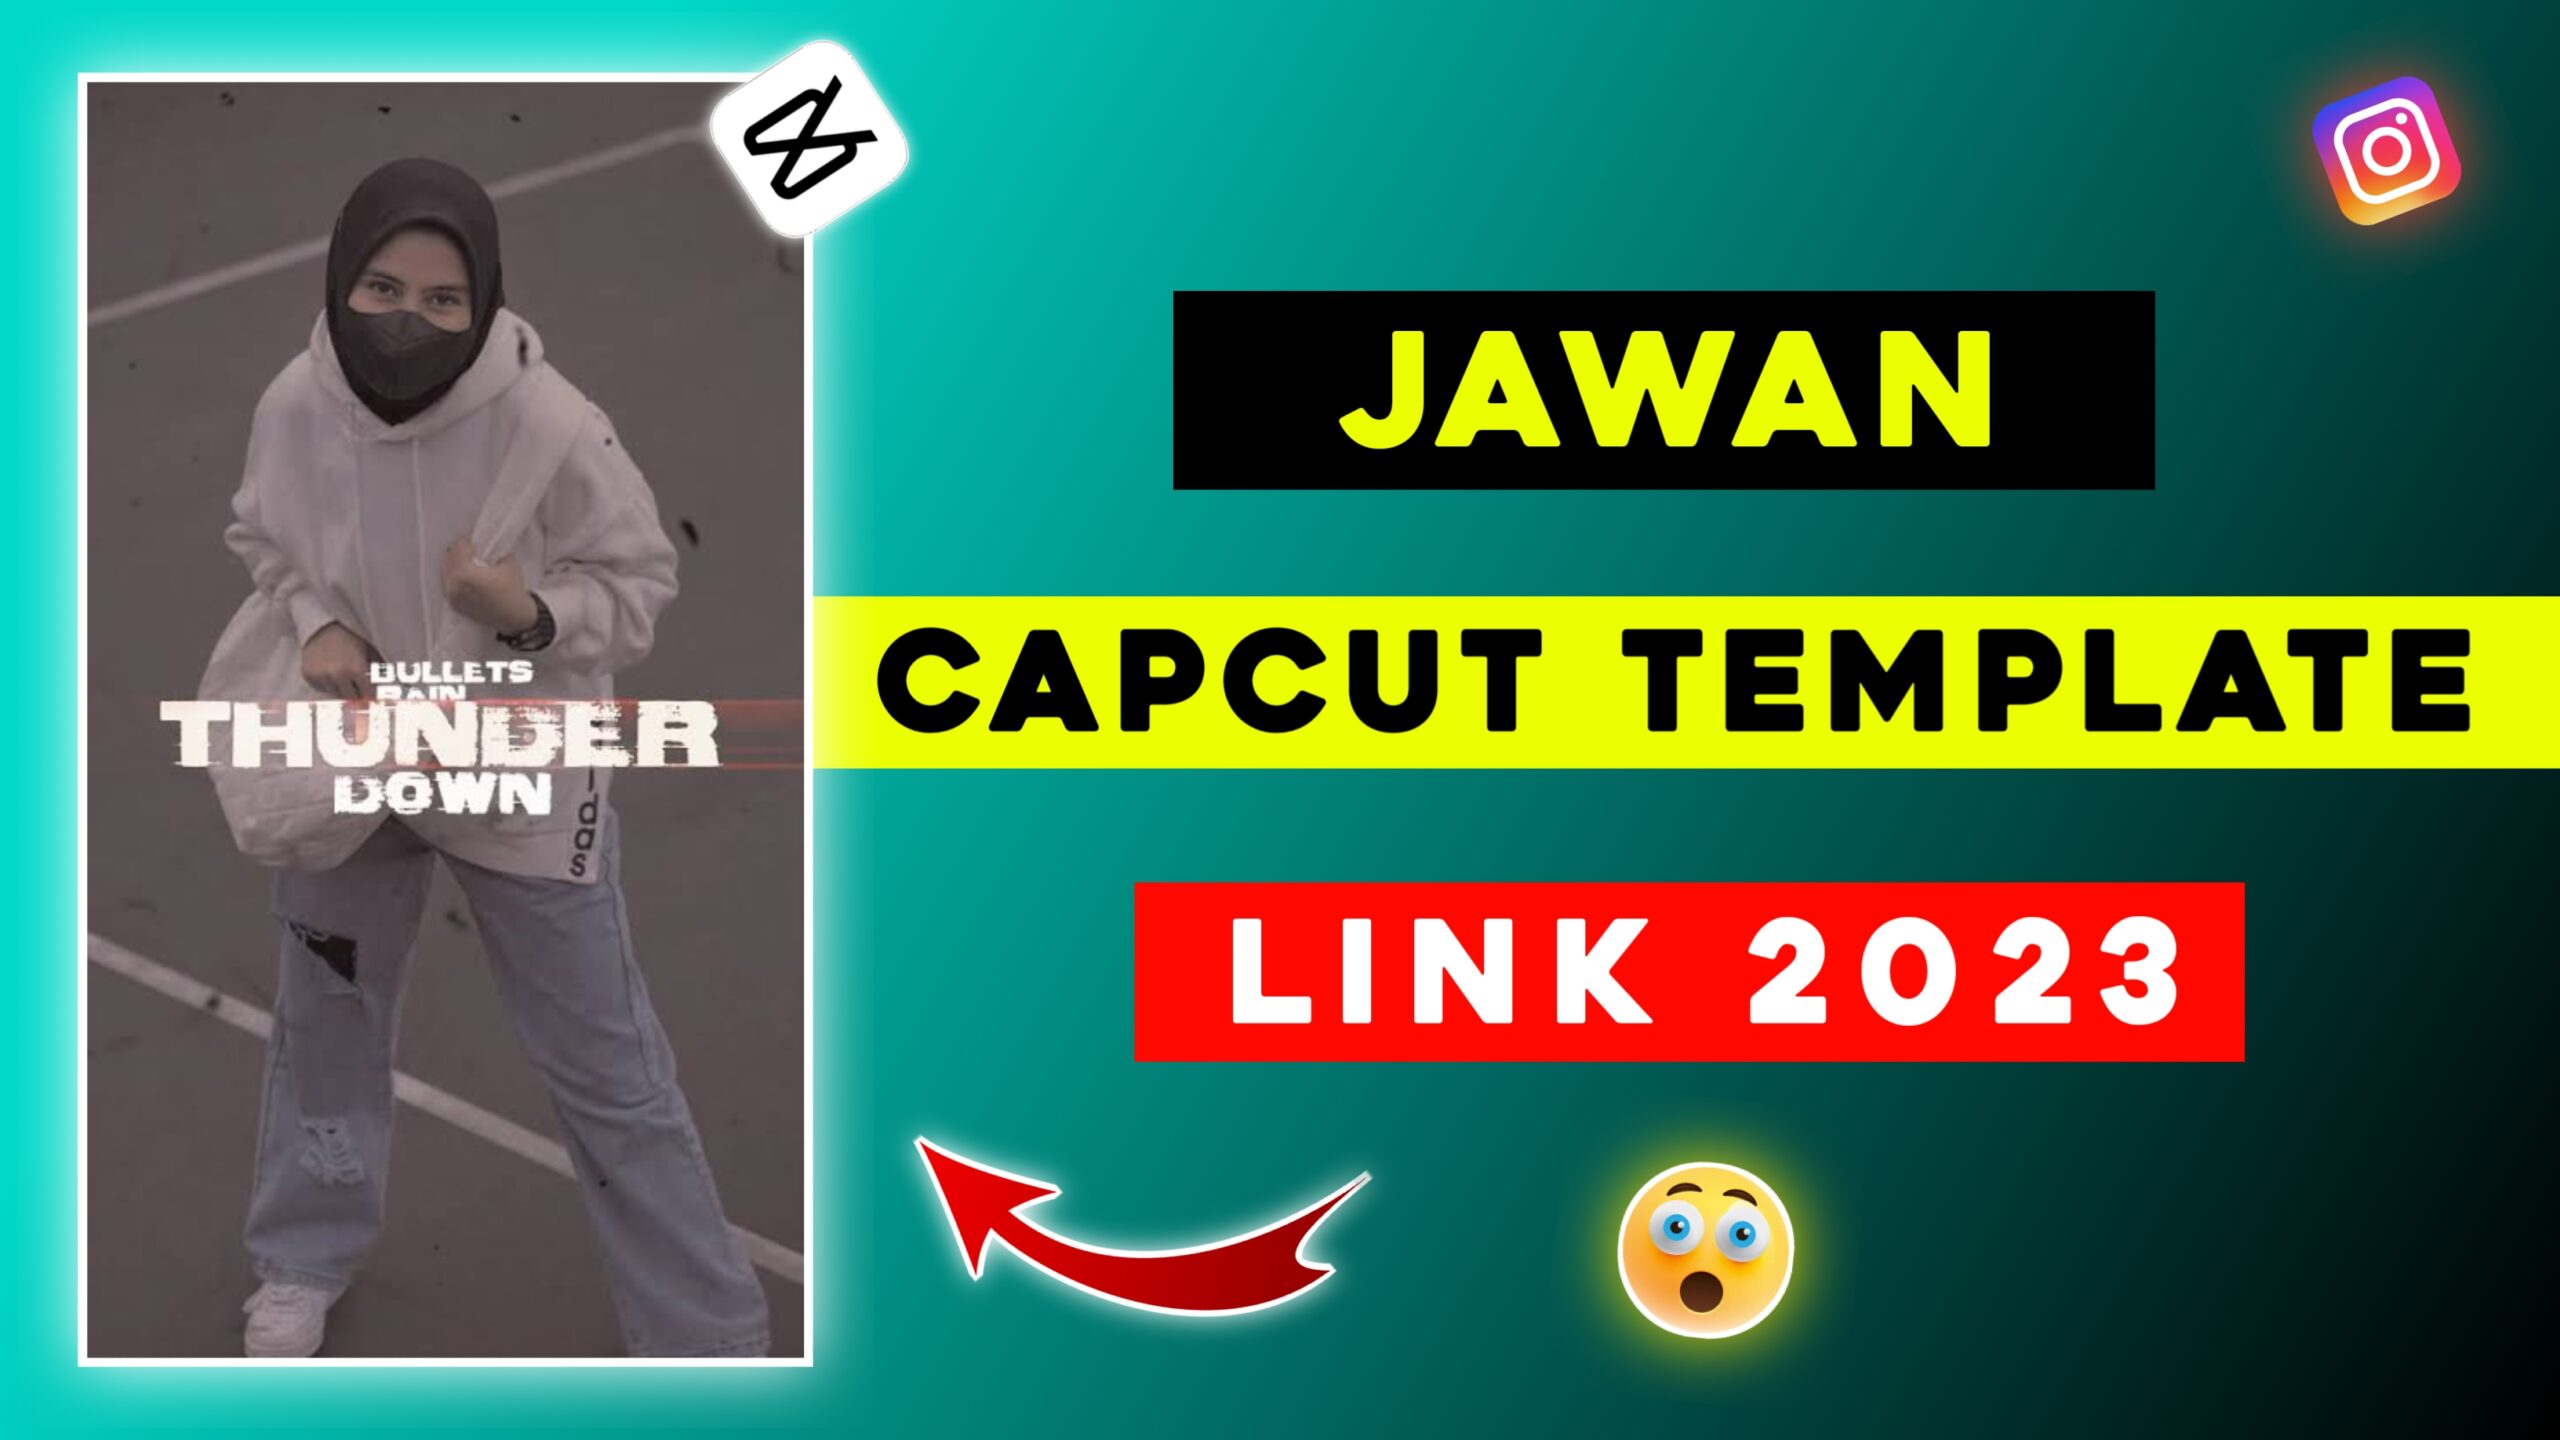 Jawan CapCut Template Link 2023 Tahir Editz